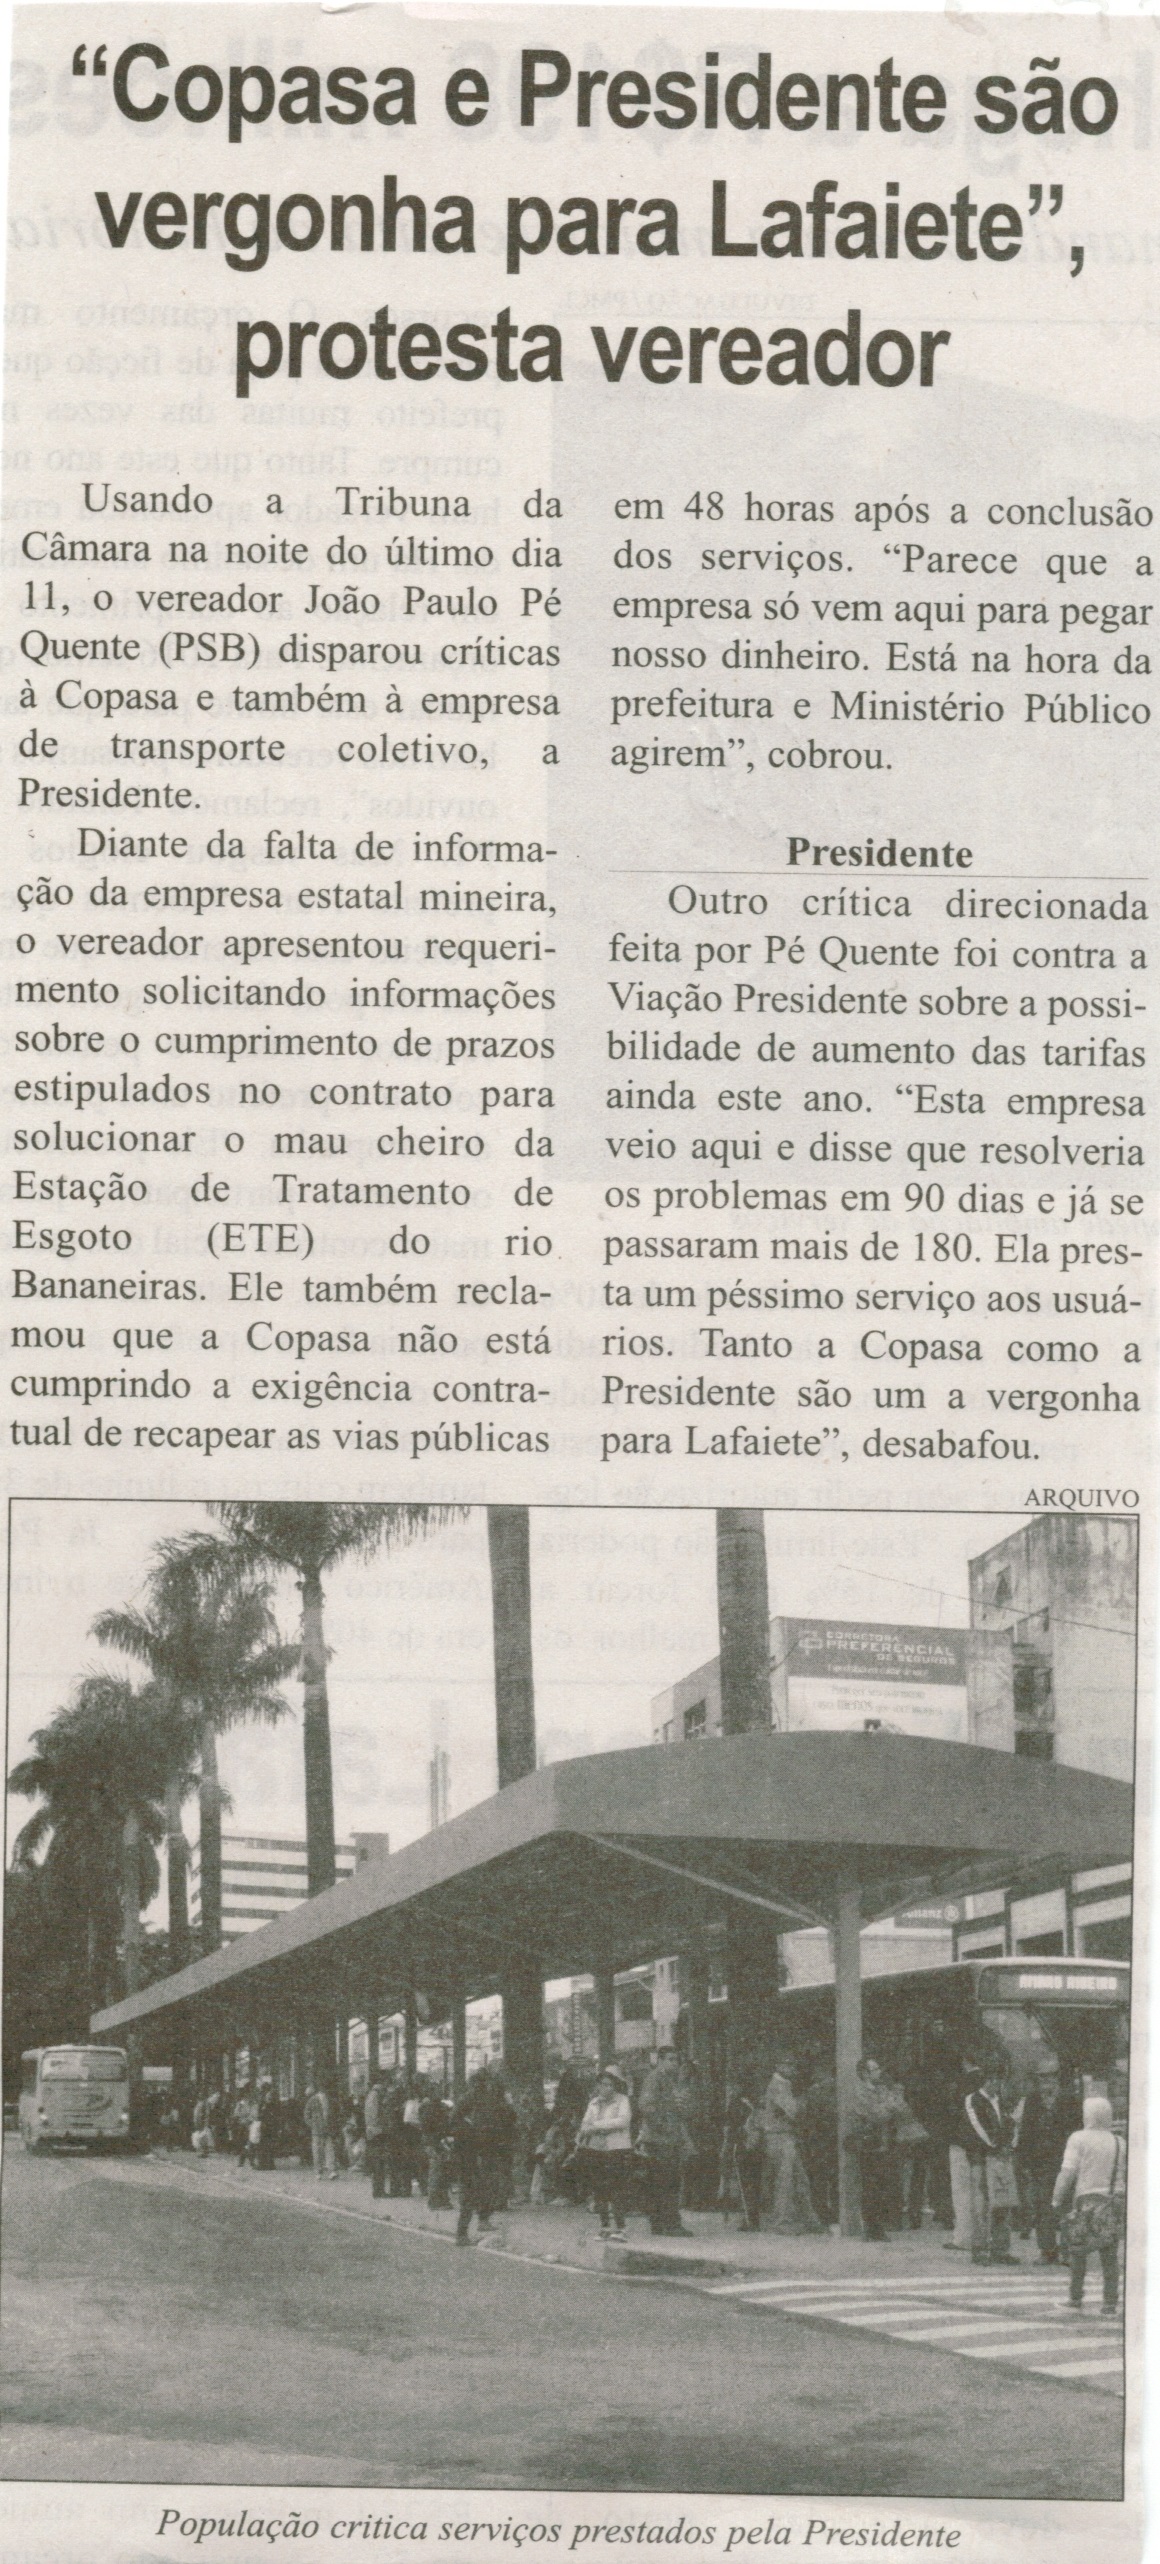  Copasa e Presidente são vergonha para Lafaiete, protesta vereador. Correio de Minas, Conselheiro Lafaiete, 15 nov. 2014, p. 3.